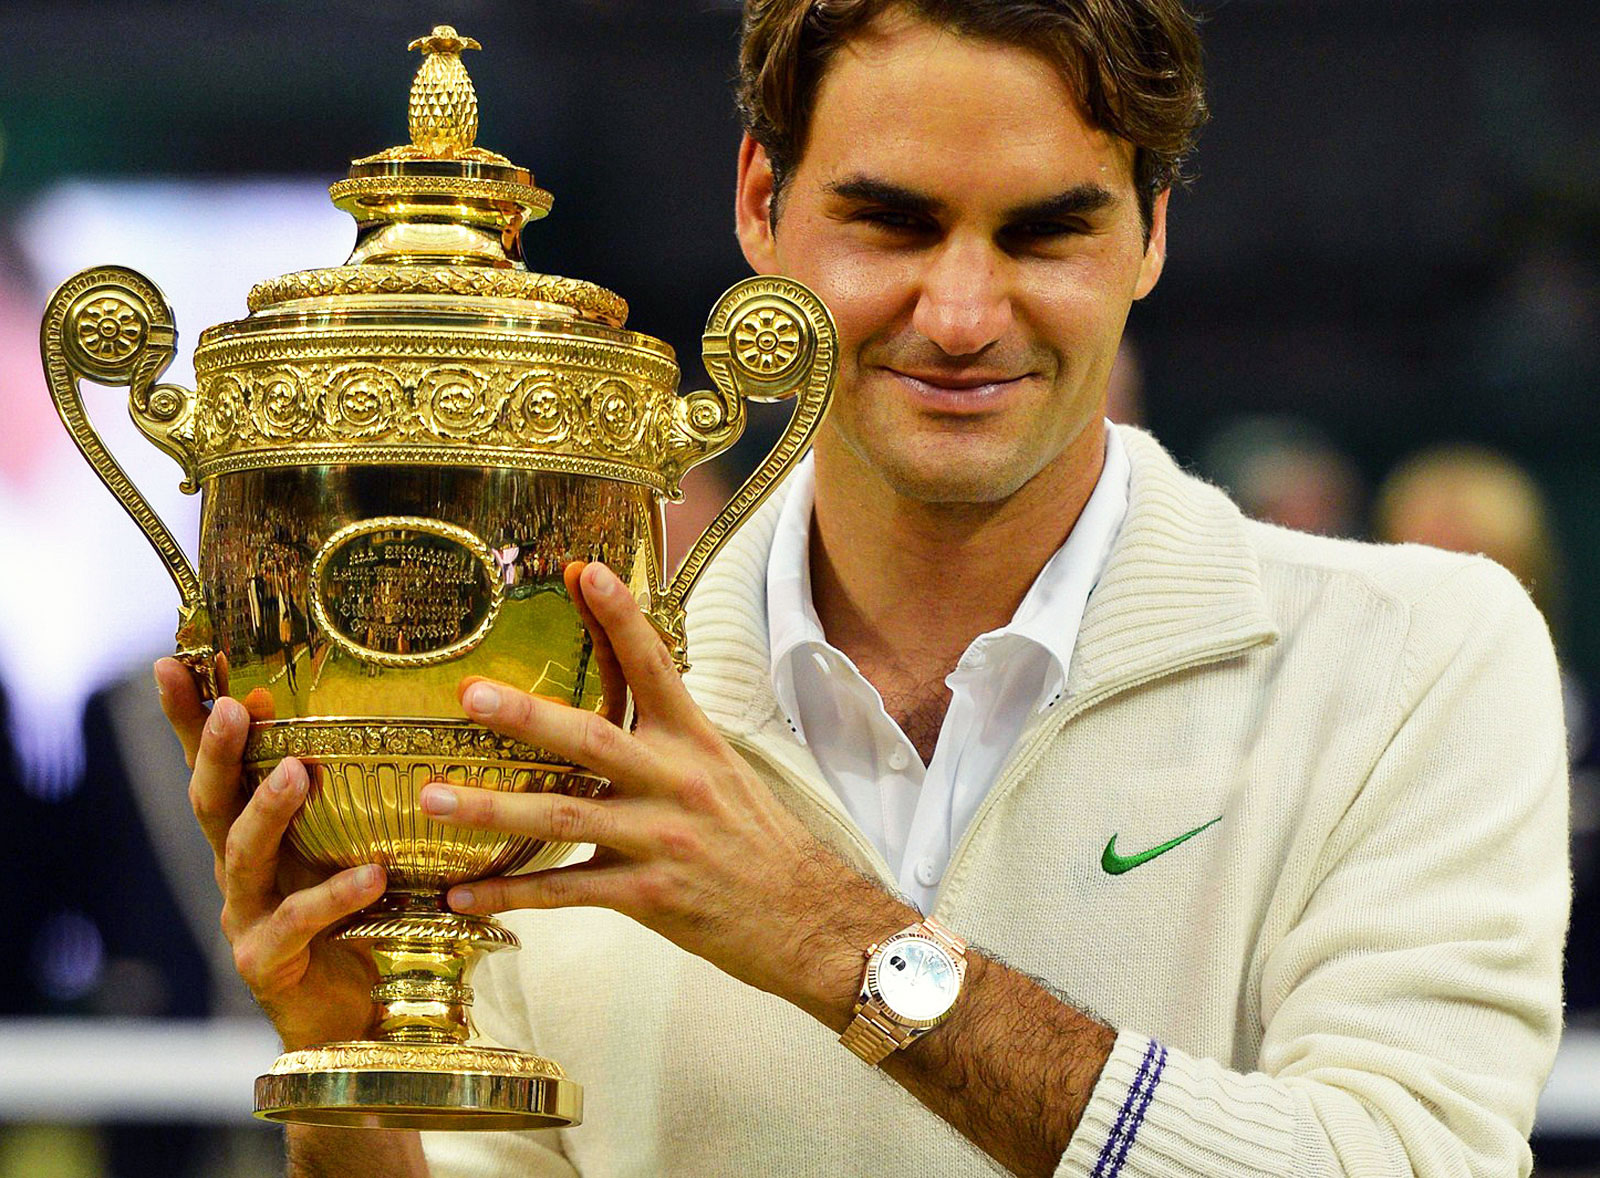 Roger Federer – The Tennis Legend